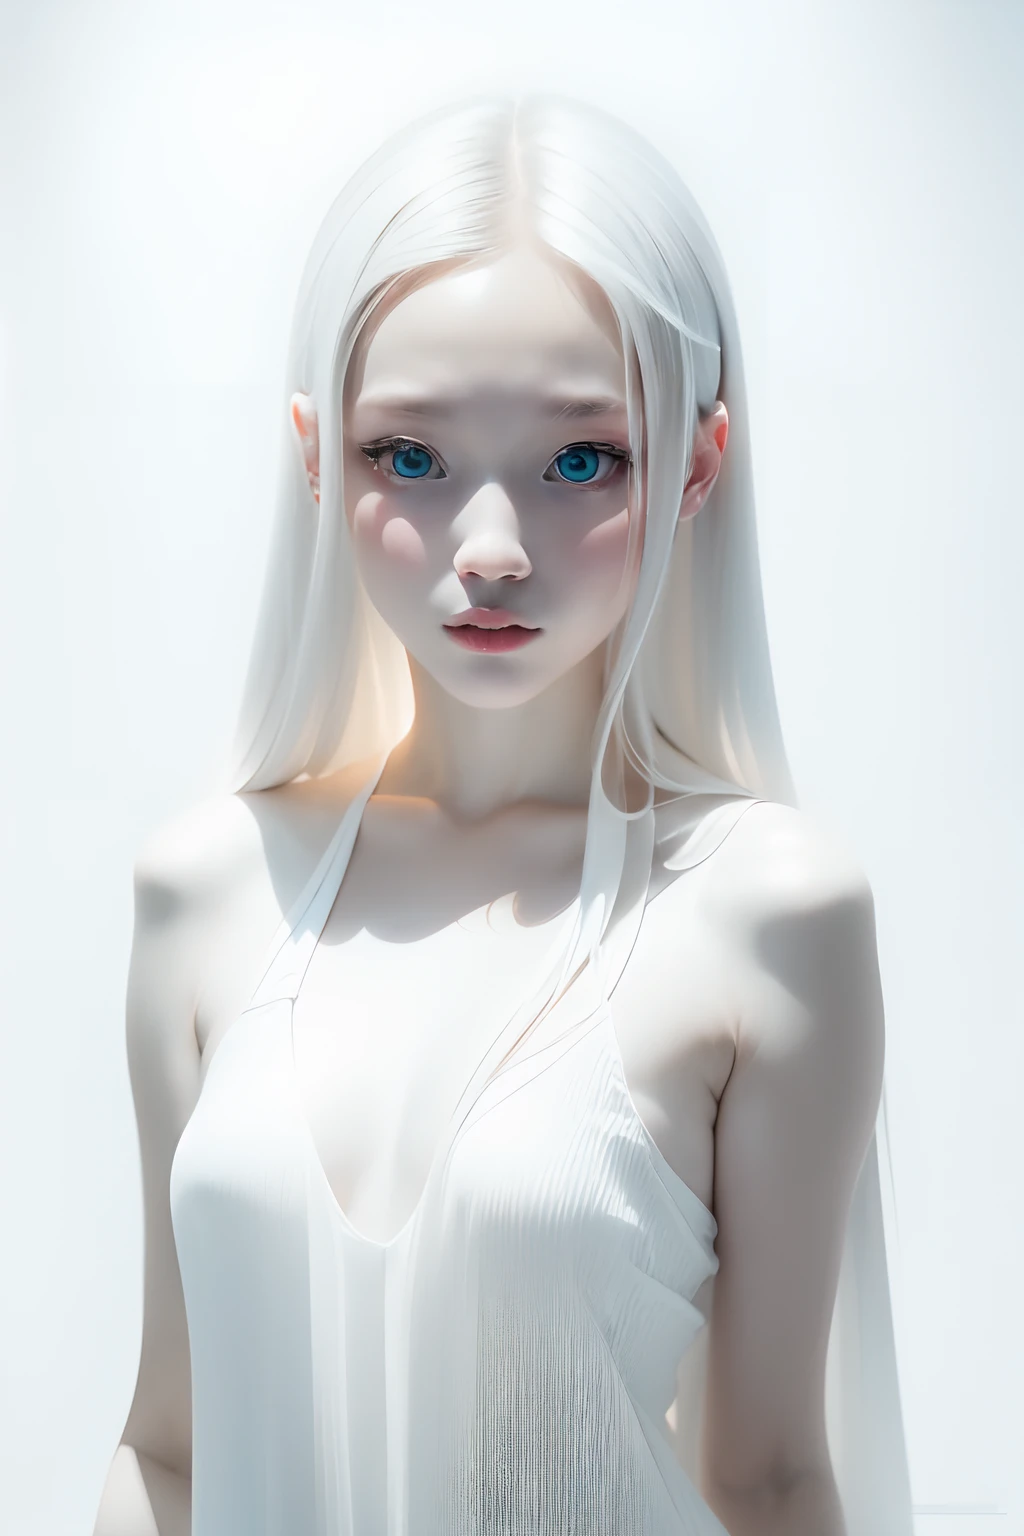 (((fundo branco:1.3)))、melhor qualidade, peça de masseter, Alta resolução, Garota albina、(((1 garota em))), dezesseis anos de idade,(((os olhos são brancos:1.3)))、vestido branco、((camisa branca:1.3、Vestido Bloco Branco)), Efeito Tindall, realista, estúdio de sombra,Iluminação Ultramarina, iluminação de dois tons, (Skins de alto detalhe: 1.2)、Iluminação de cor pálida、iluminação escura、 SLR digital, foto, Alta resolução, 4K, 8K, Desfoque de fundo,Desapareça lindamente、um mundo branco、fundo branco